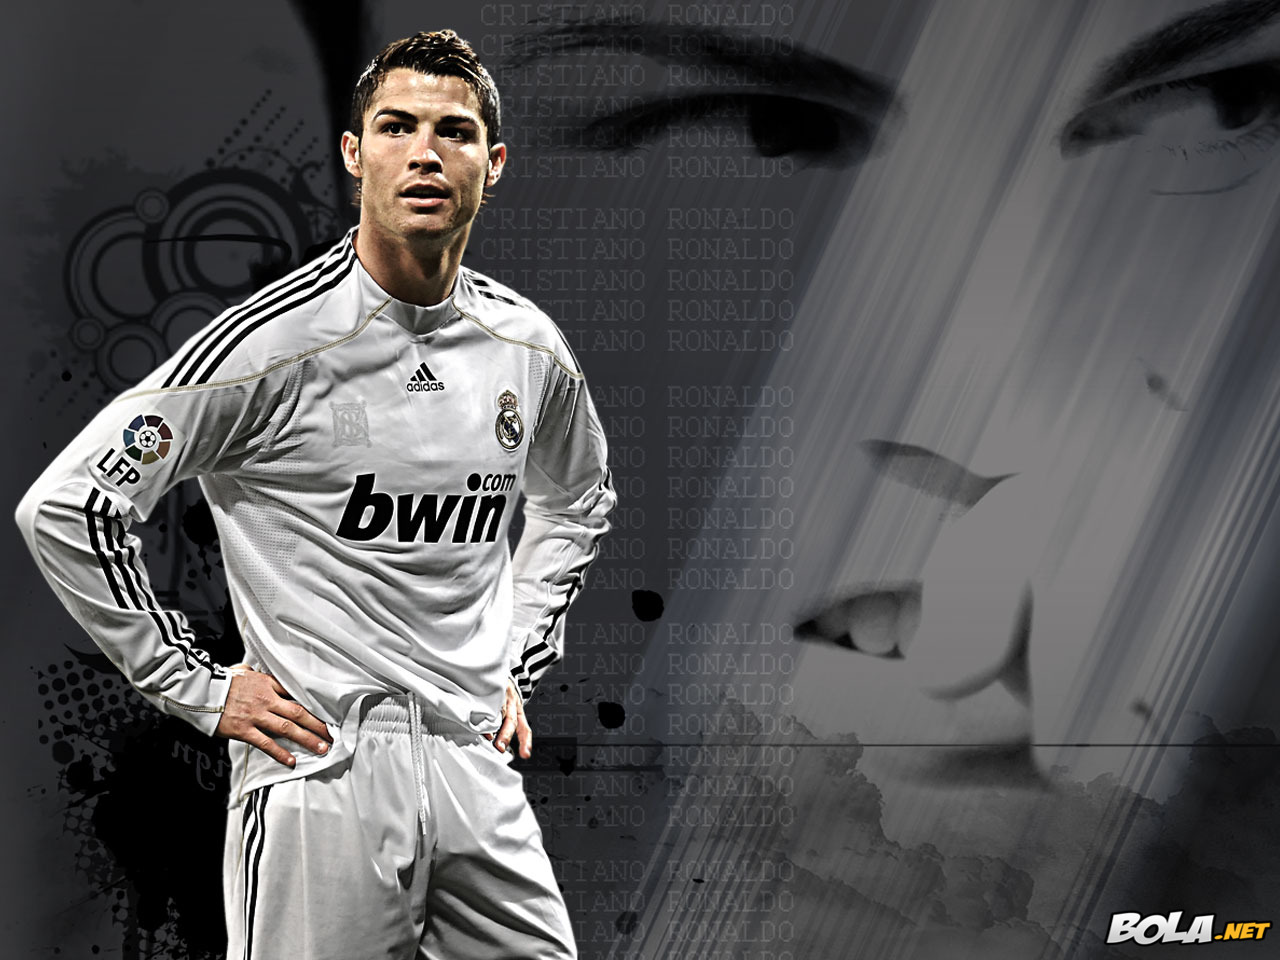 Amazing Cristiano Ronaldo CR7 Wallpaper Photos #8096 Wallpaper ...